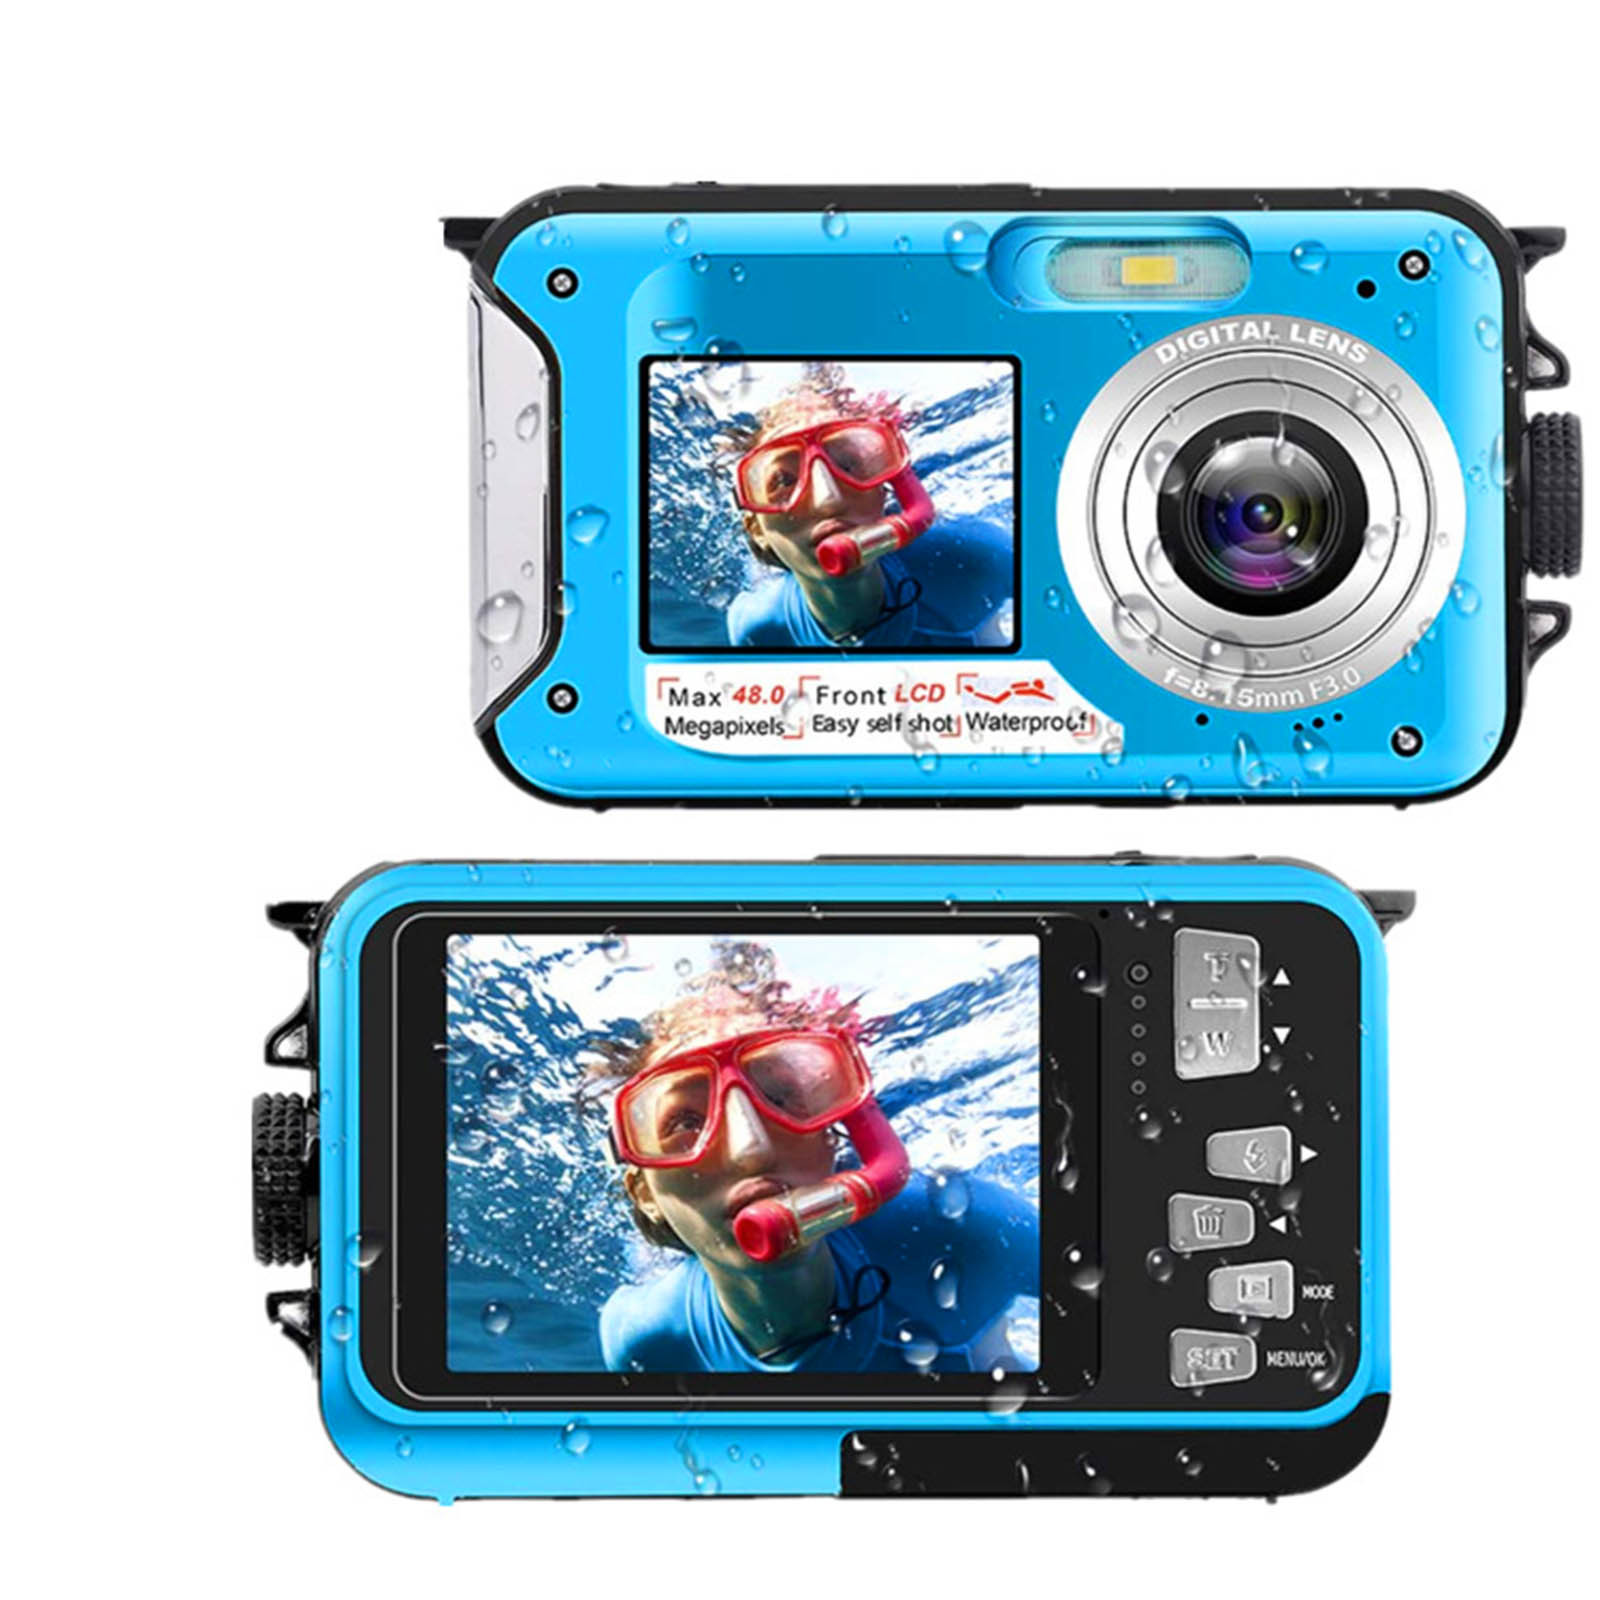 Holiday Savings 2022! Feltree Waterproof Camera Underwater Cameras For Snorkeling Full HD 2.7K 48MP Video Recorder Selfie Dual Screens 10FT 16X Digital Zoom Waterproof Digital Camera Blue - image 2 of 7